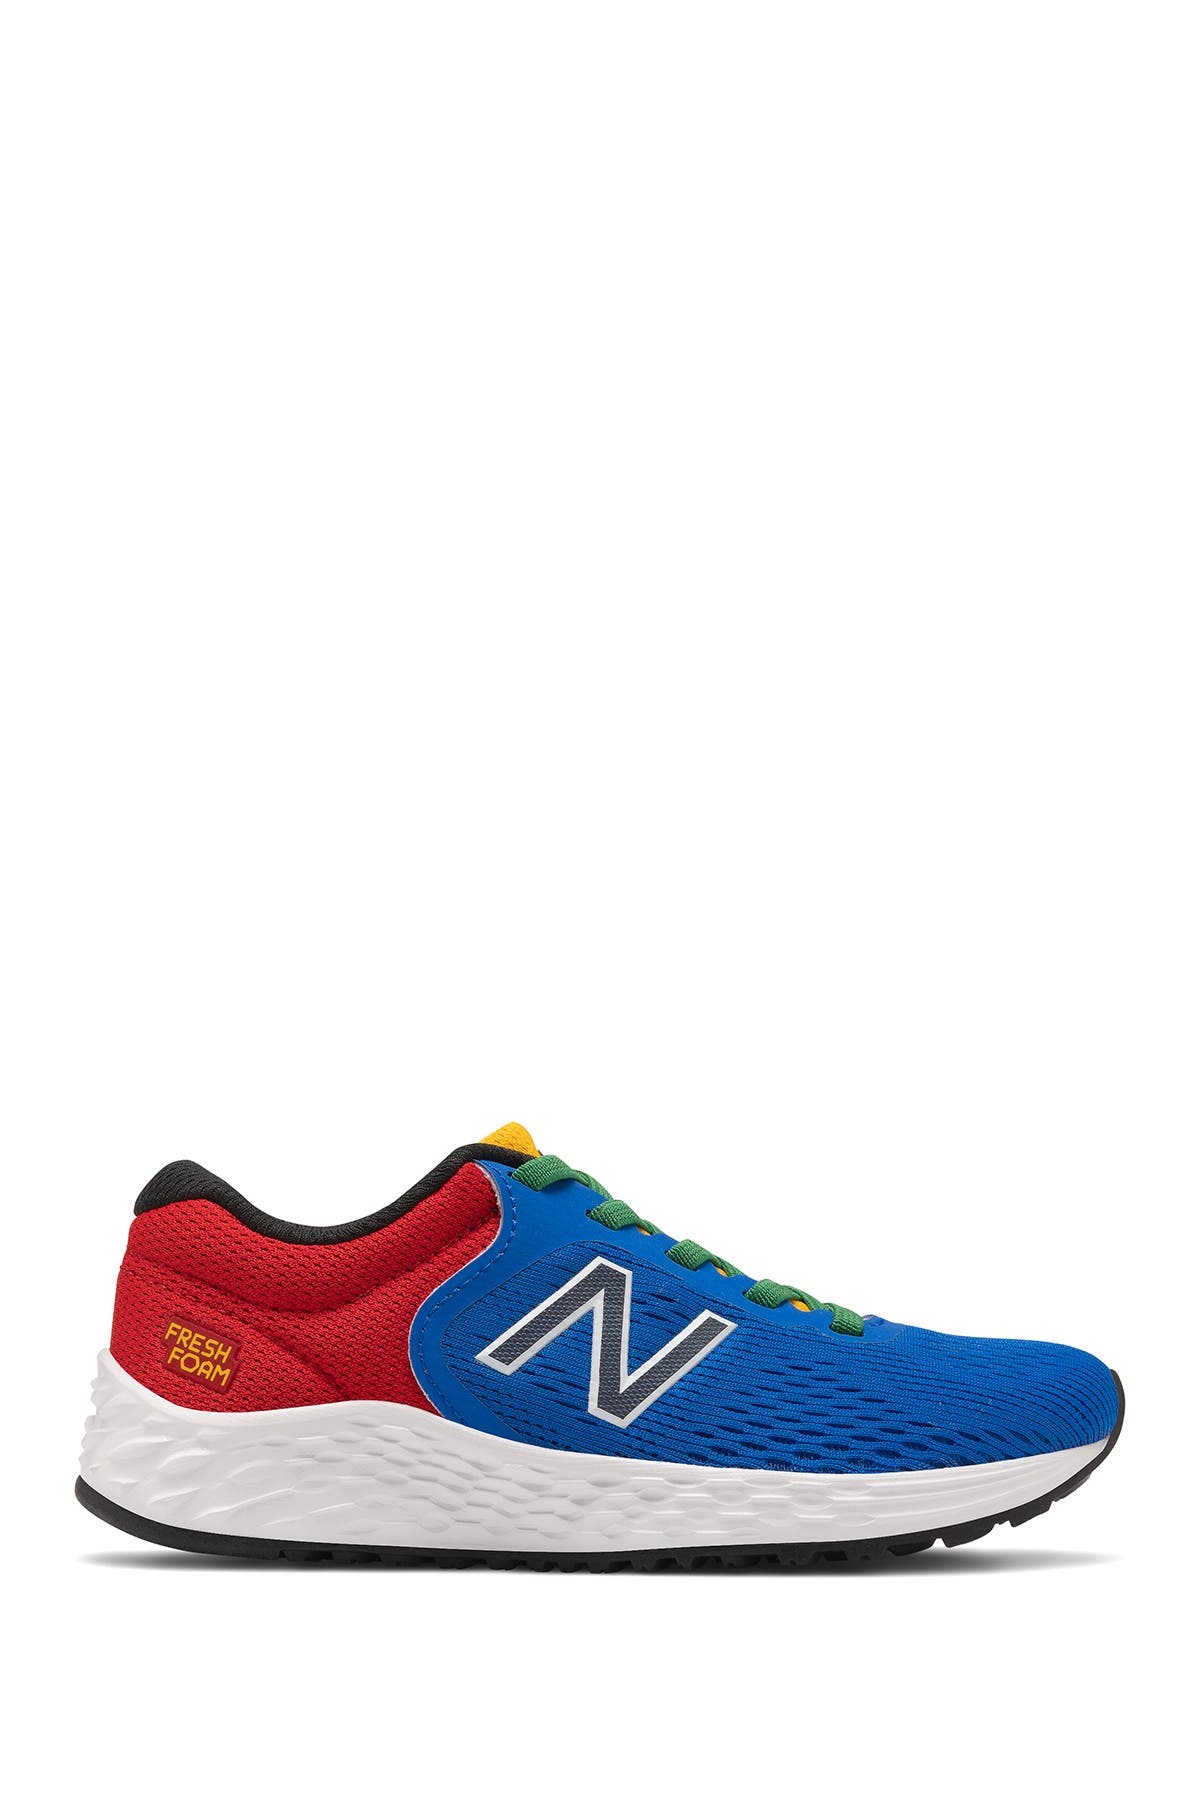 new balance 88 running shoe